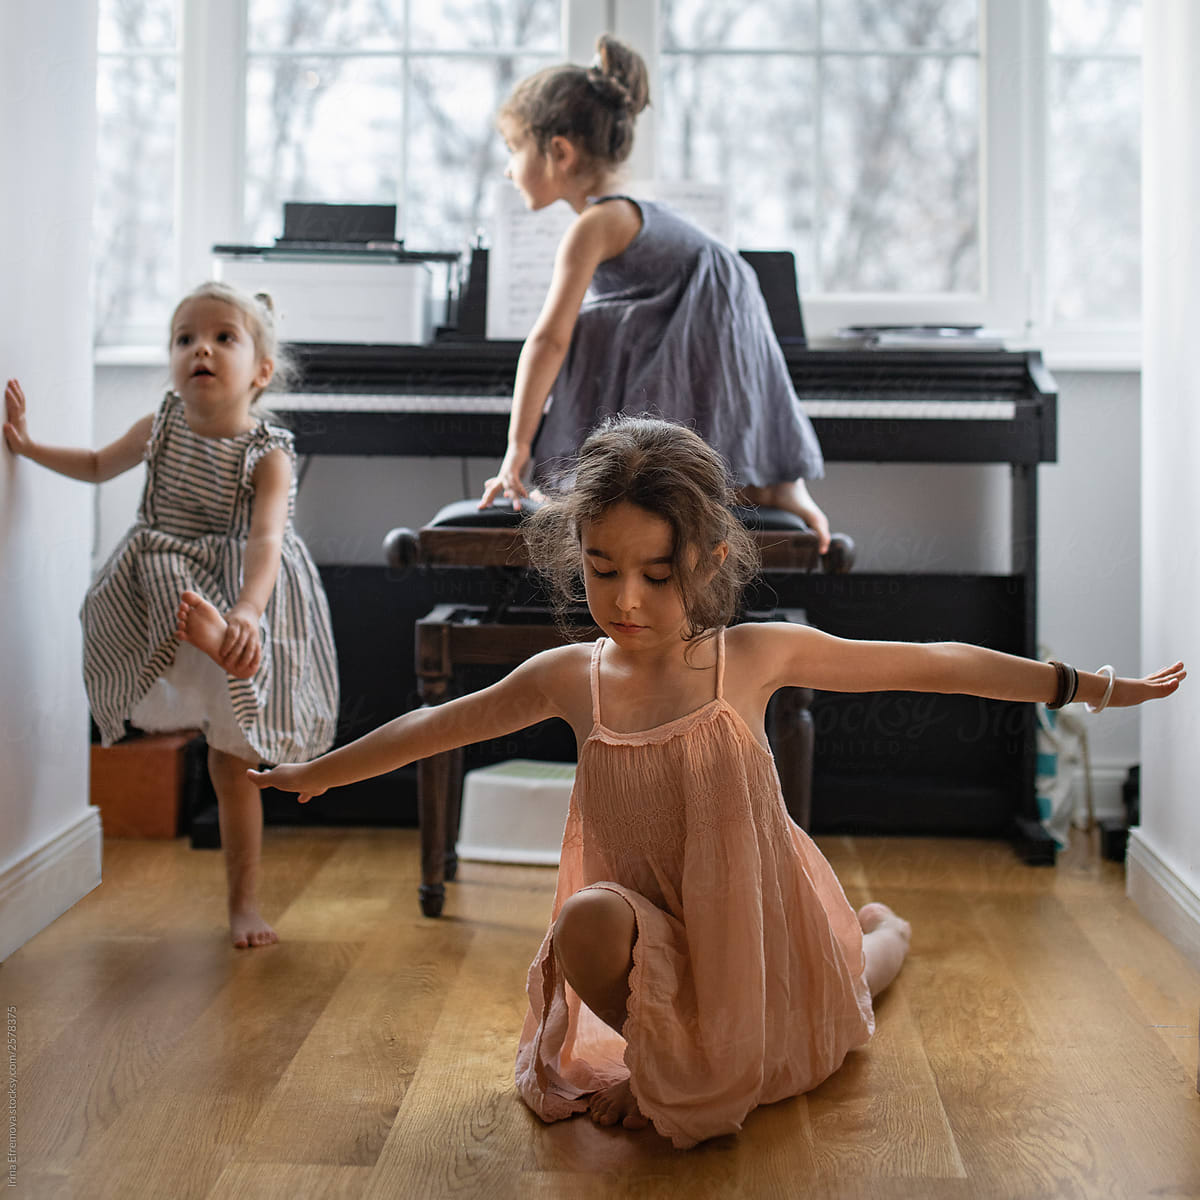 Three little girls goofing around the piano